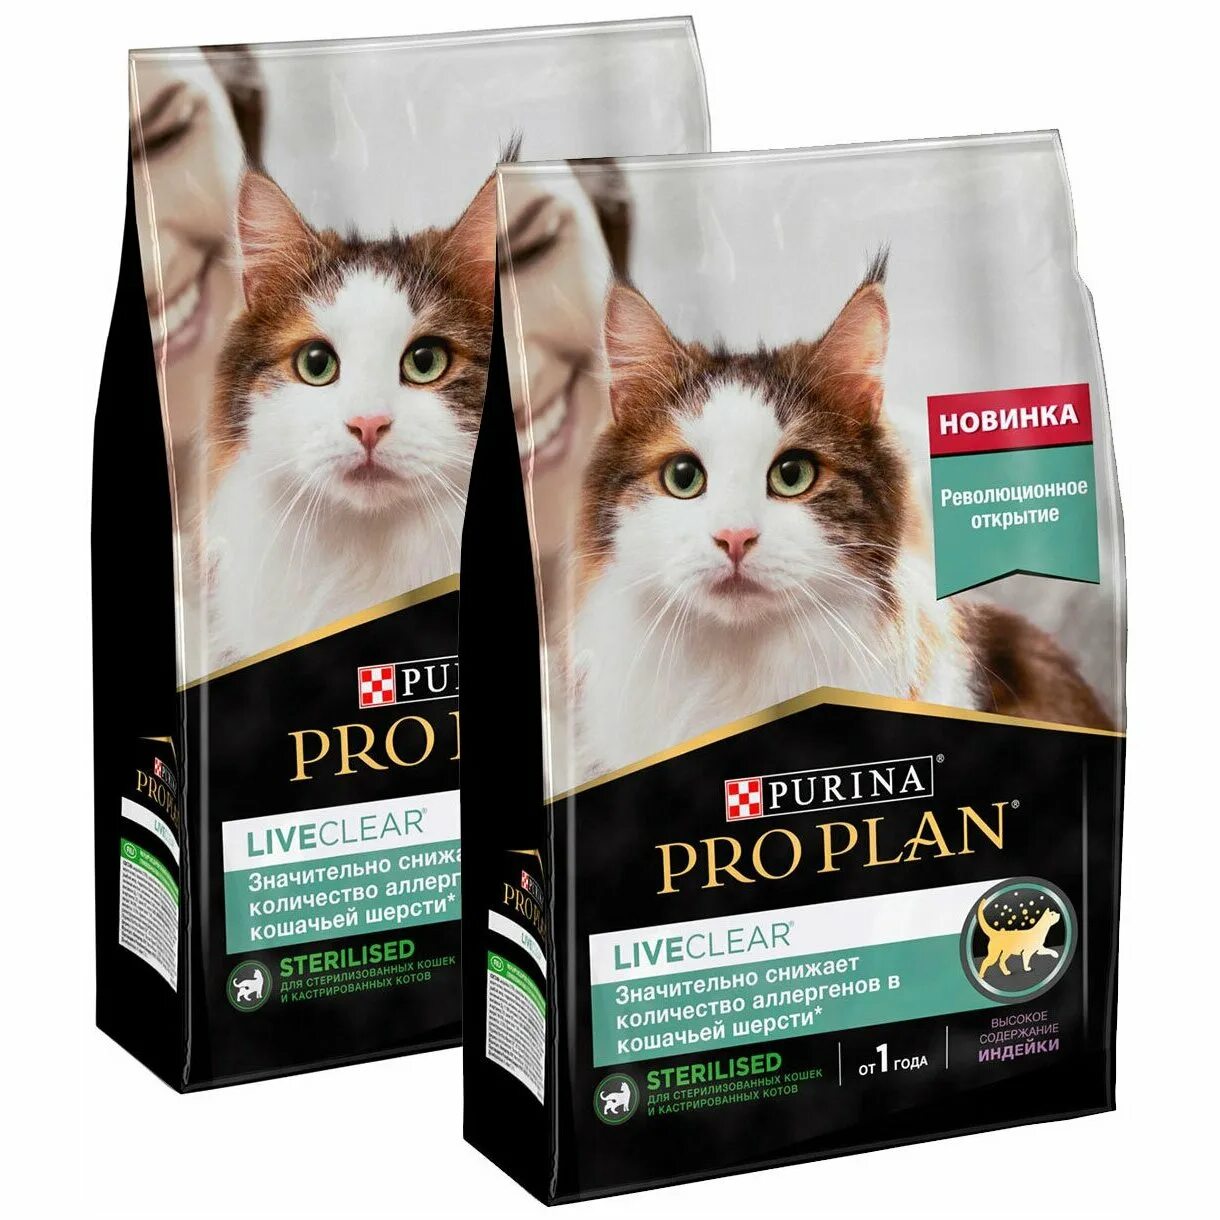 Сухой корм Pro Plan liveclear для стерилизованных кошек 1,4 кг. Корма для кошек в черных пакетиках. Сухой кошачий корм упаковка. Кошачий корм 1.